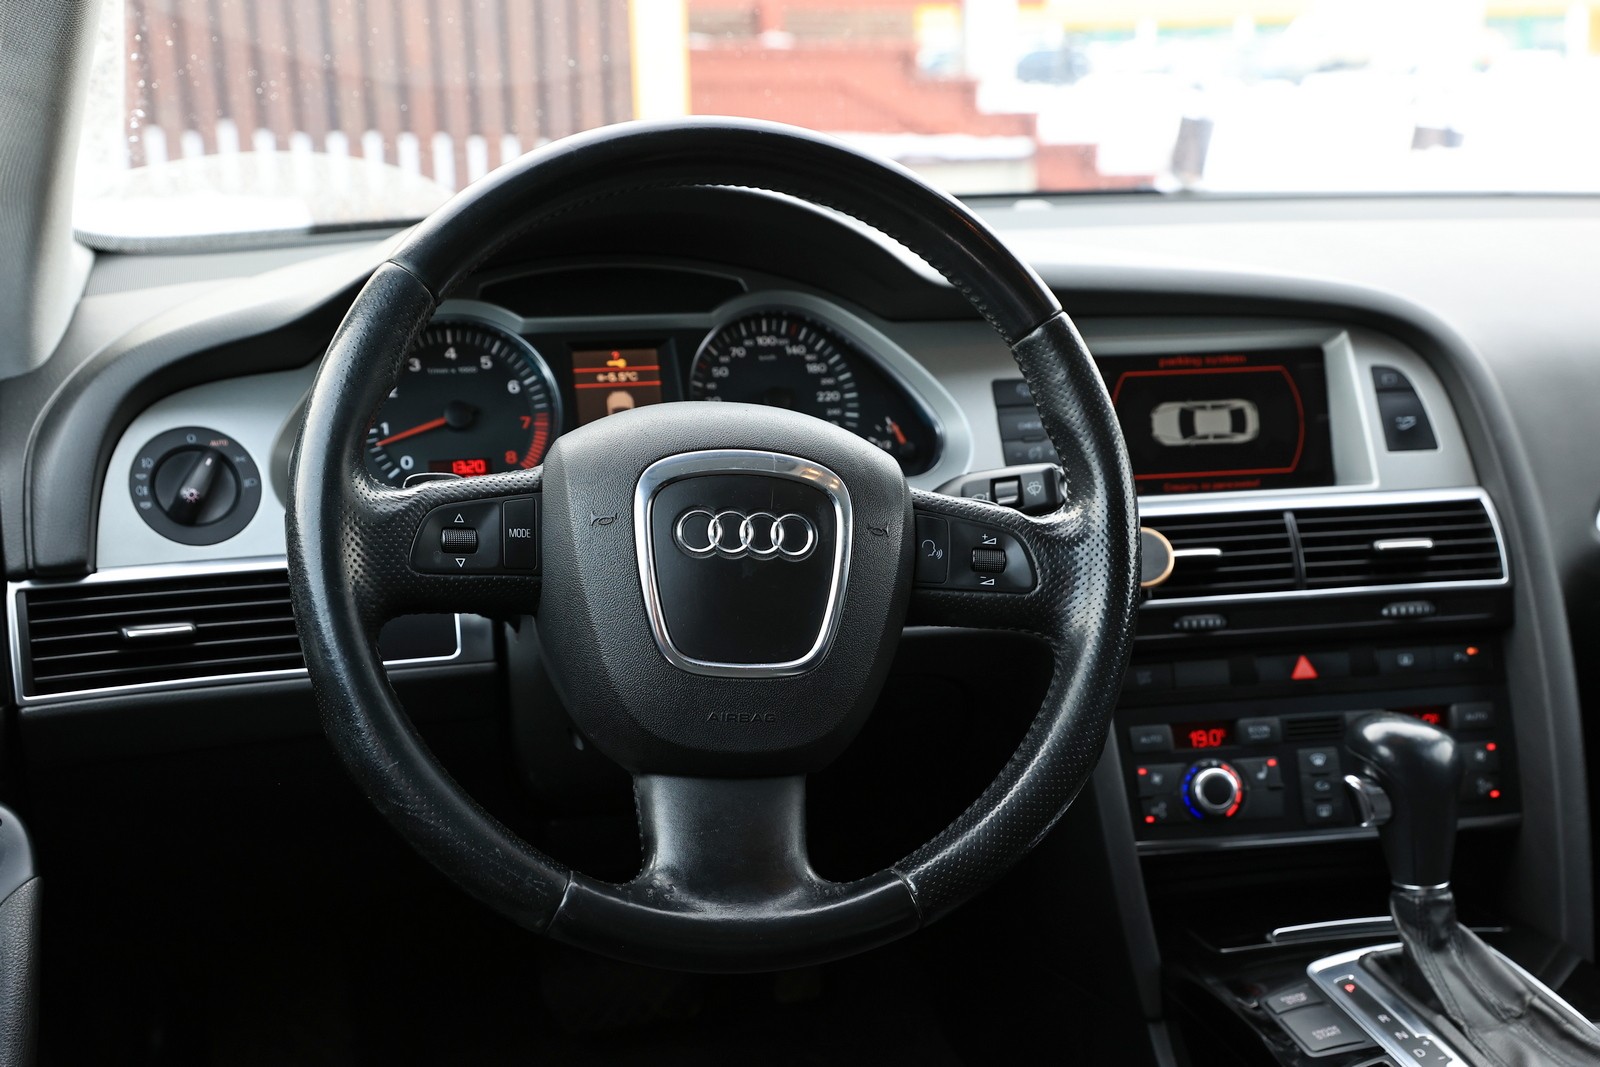 Audi A6 С6 с пробегом: алюминий может гнить, а кнопки придётся подкрашивать